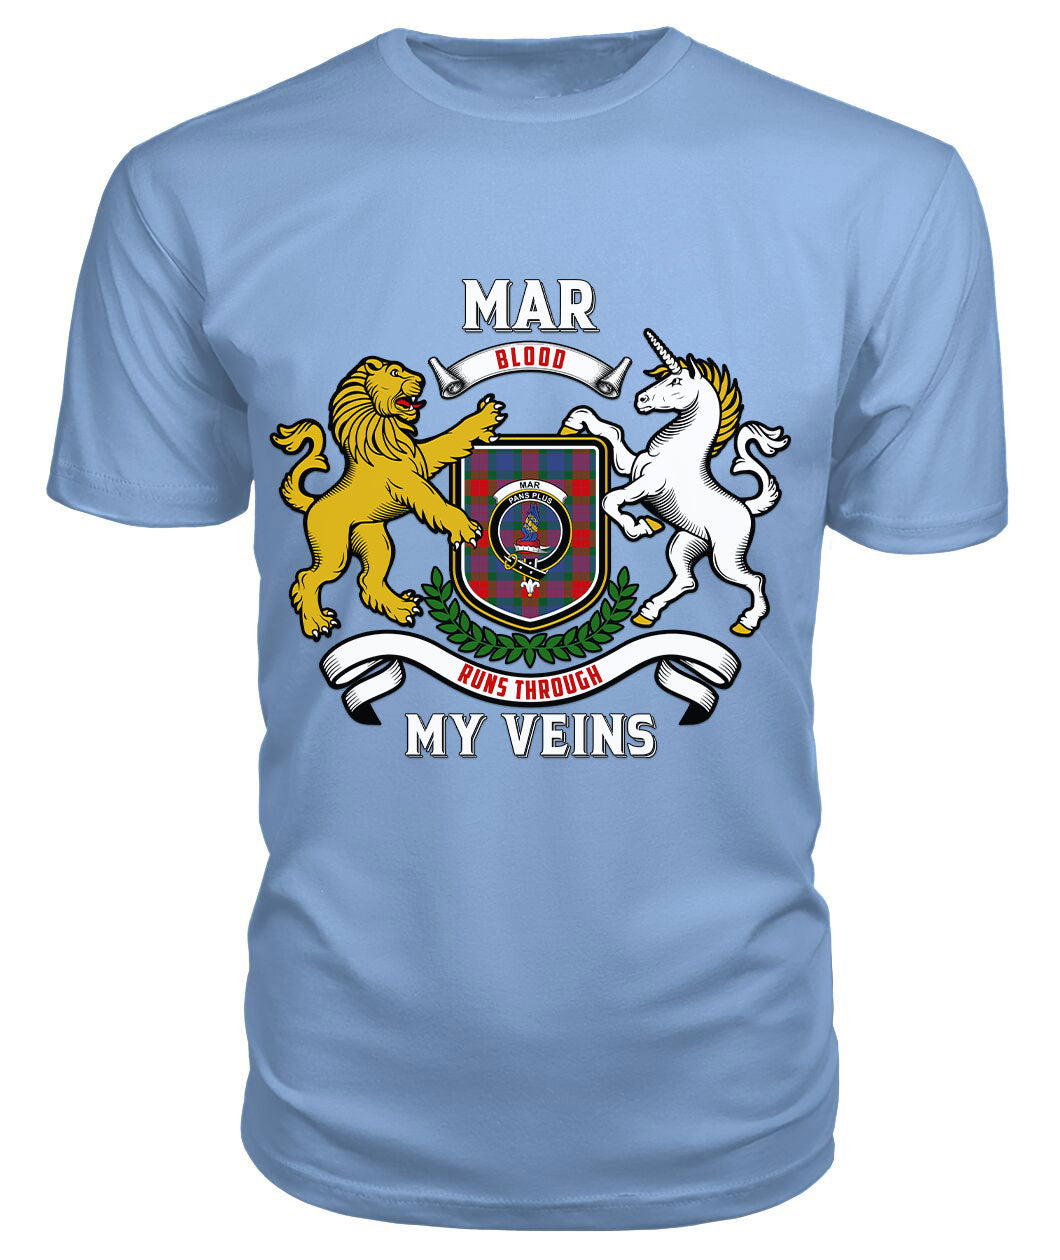 Mar Tartan Crest 2D T-shirt - Blood Runs Through My Veins Style